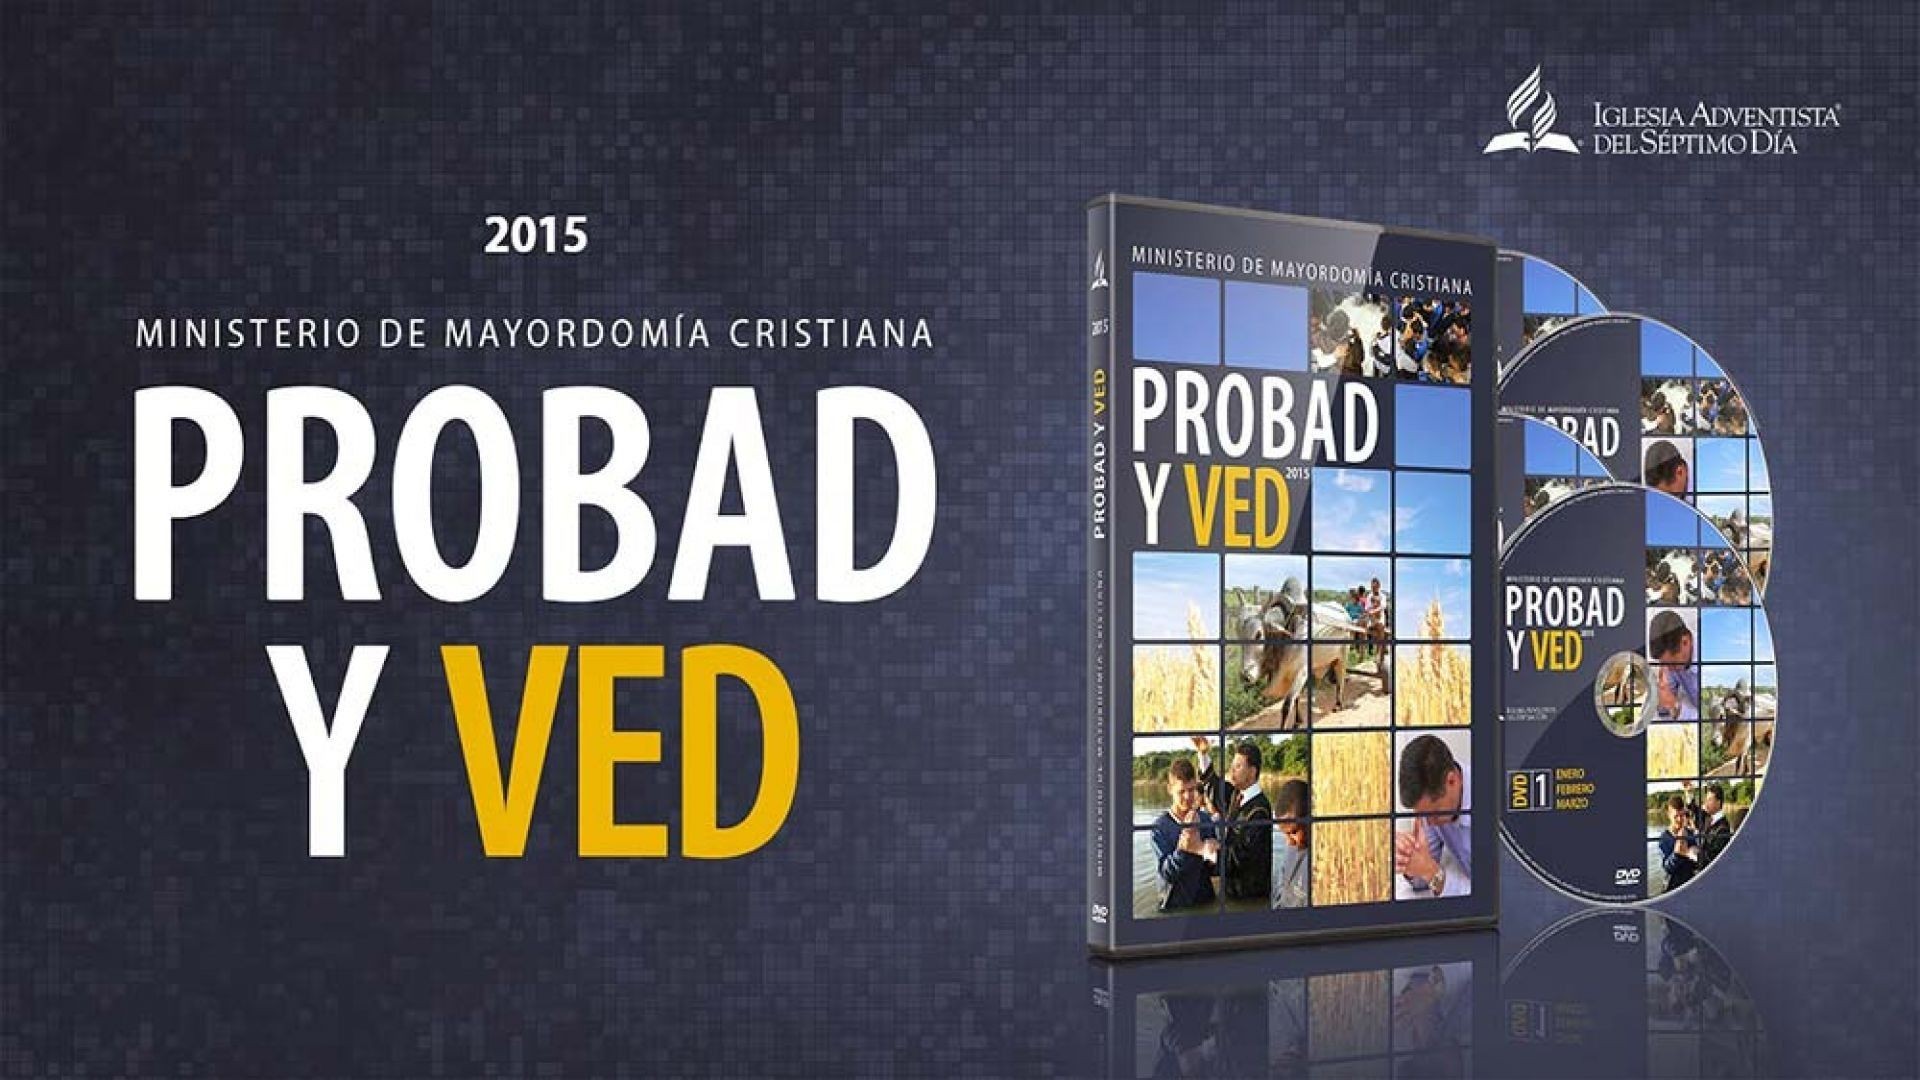 04/Abr. Confianza en la palabra - Probad y Ved | Iglesia Adventista